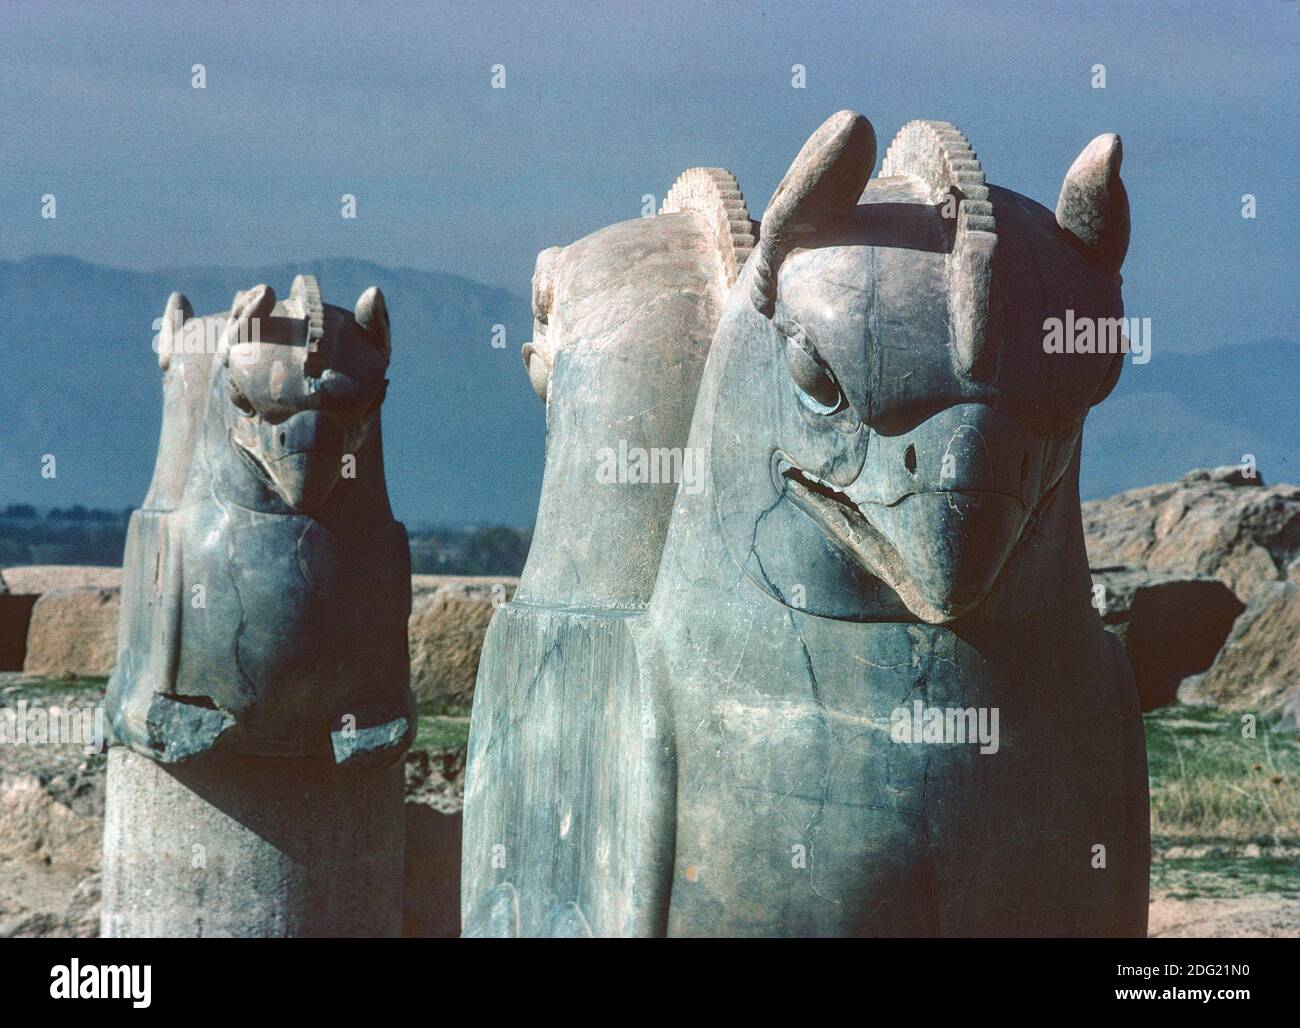 double-headed eagle capitals from the Achaemenid Apadana palace, built by Darius I and Xerxes I, Persepolis, Iran Stock Photo